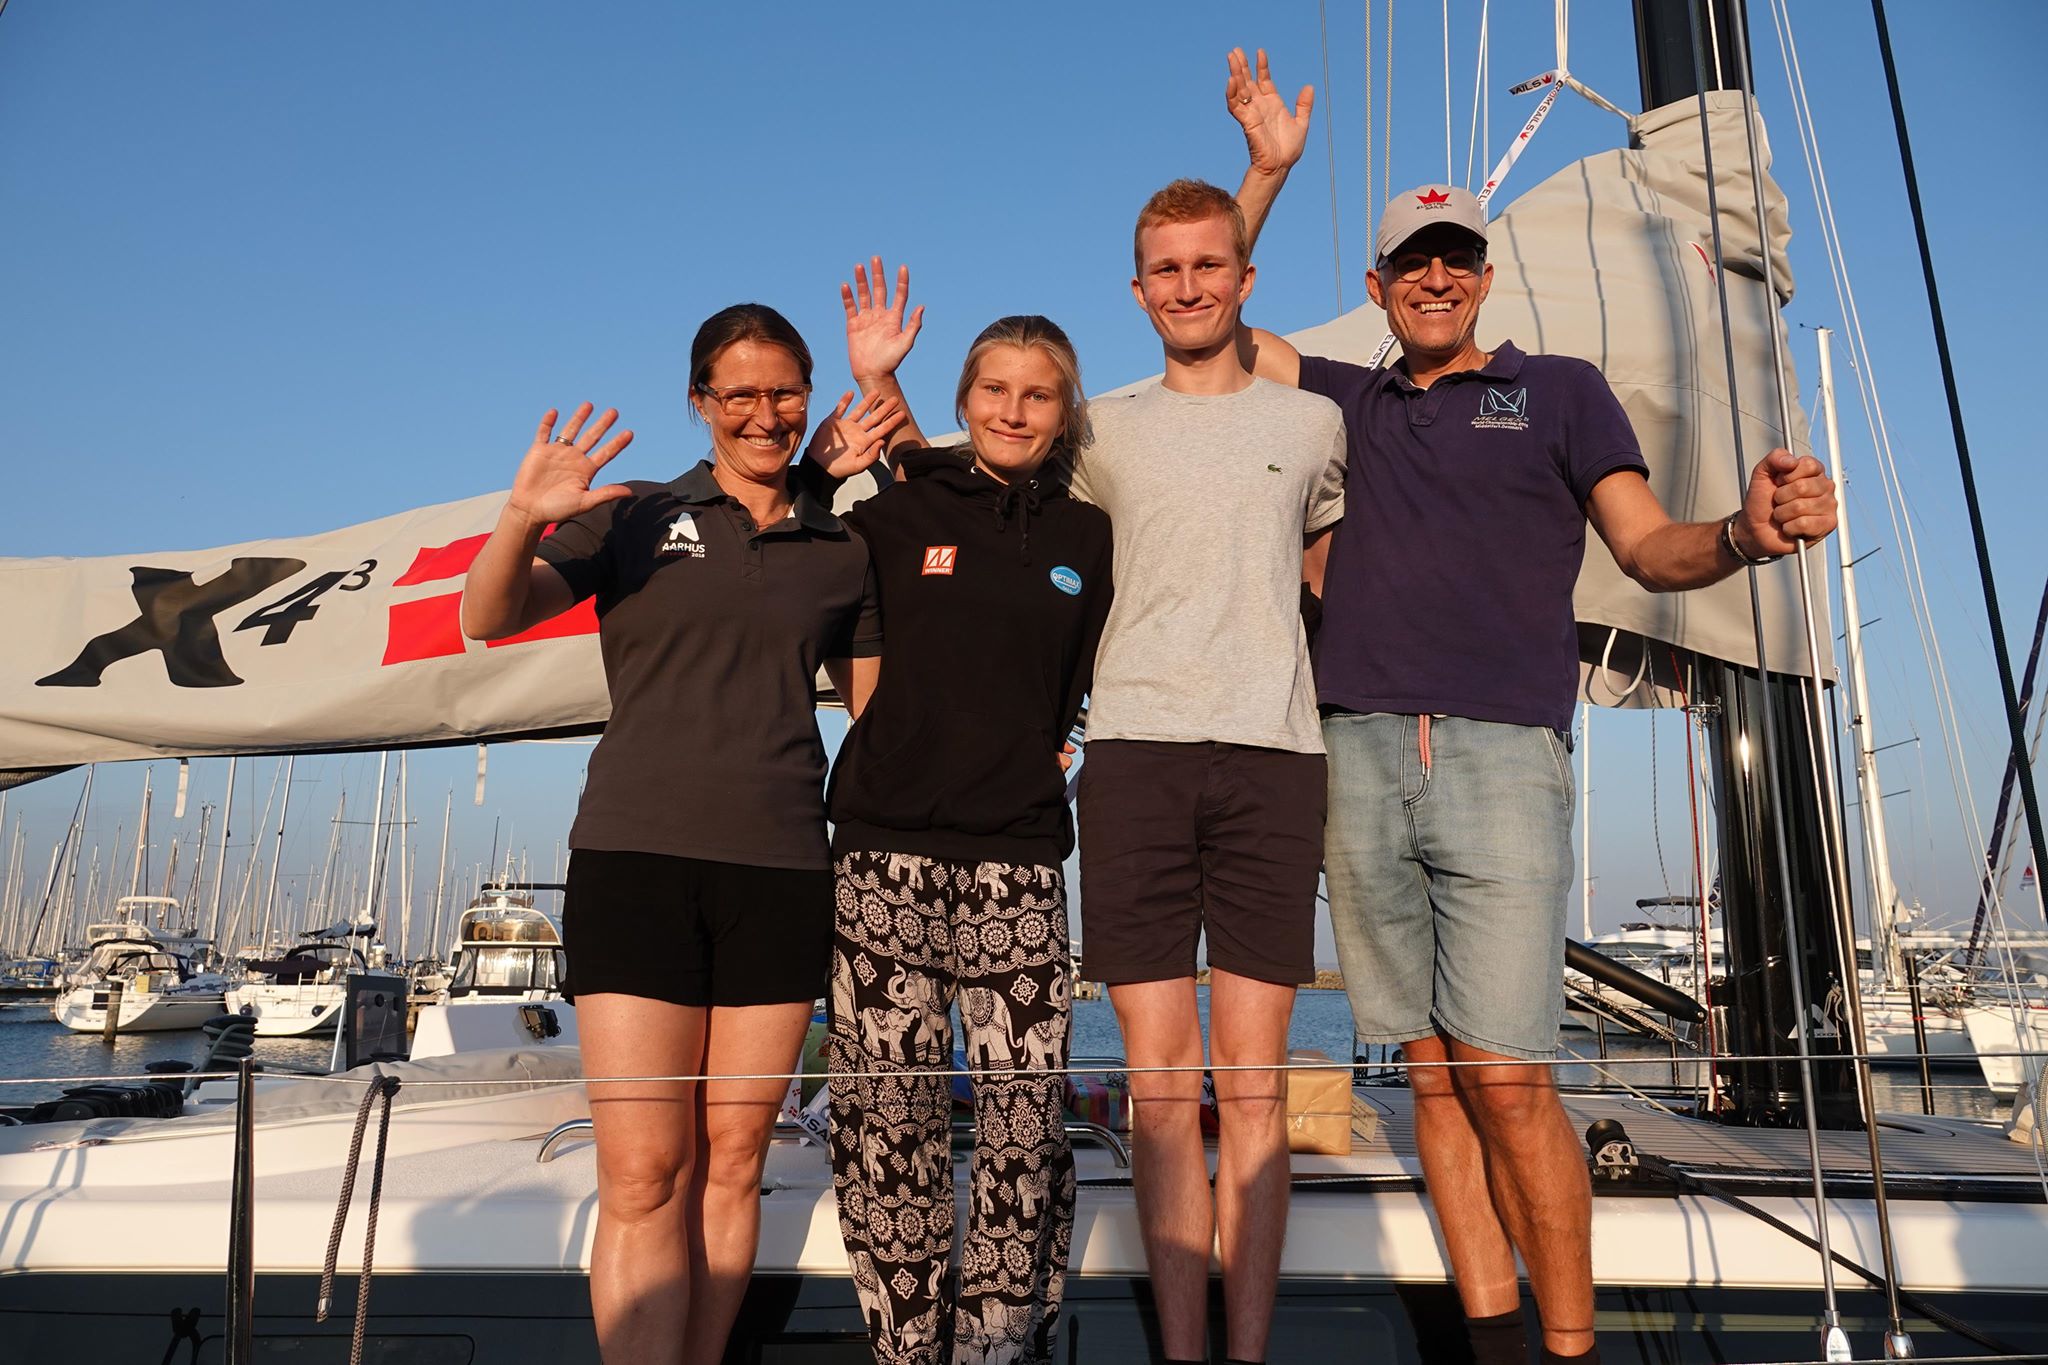 X4.3 besætning ses her i Caribien. Fra venstre: Sophie, Sara, Emil og Kim. Privatfoto